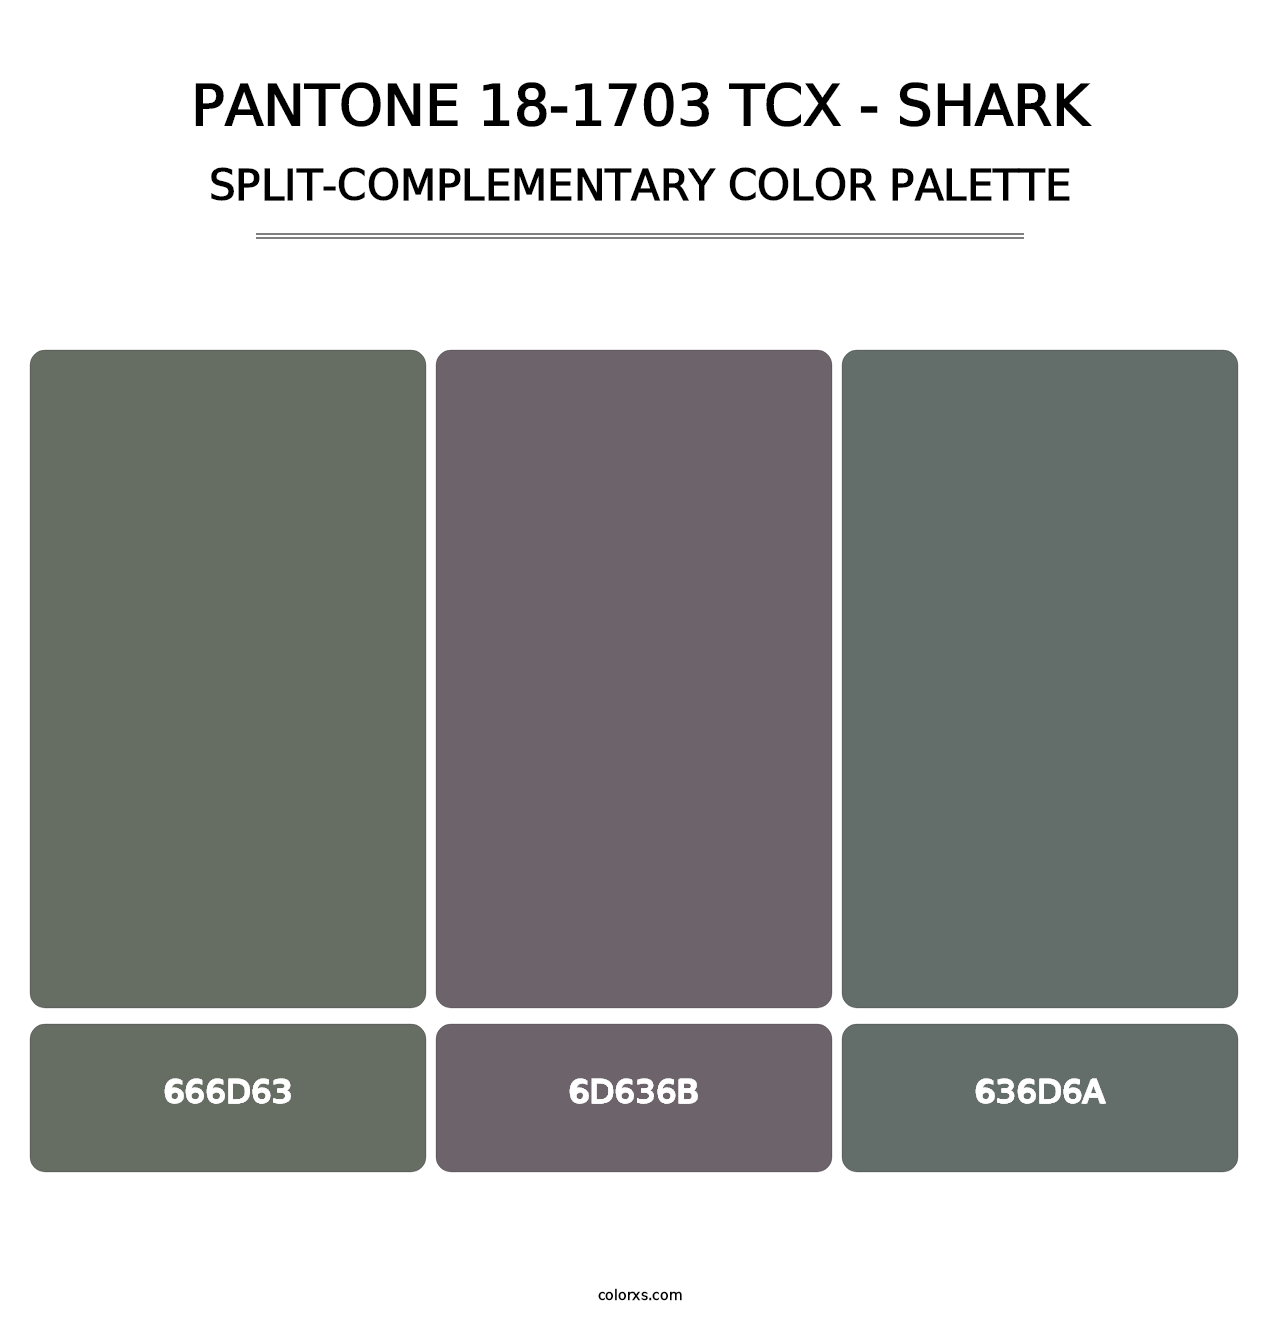 PANTONE 18-1703 TCX - Shark - Split-Complementary Color Palette